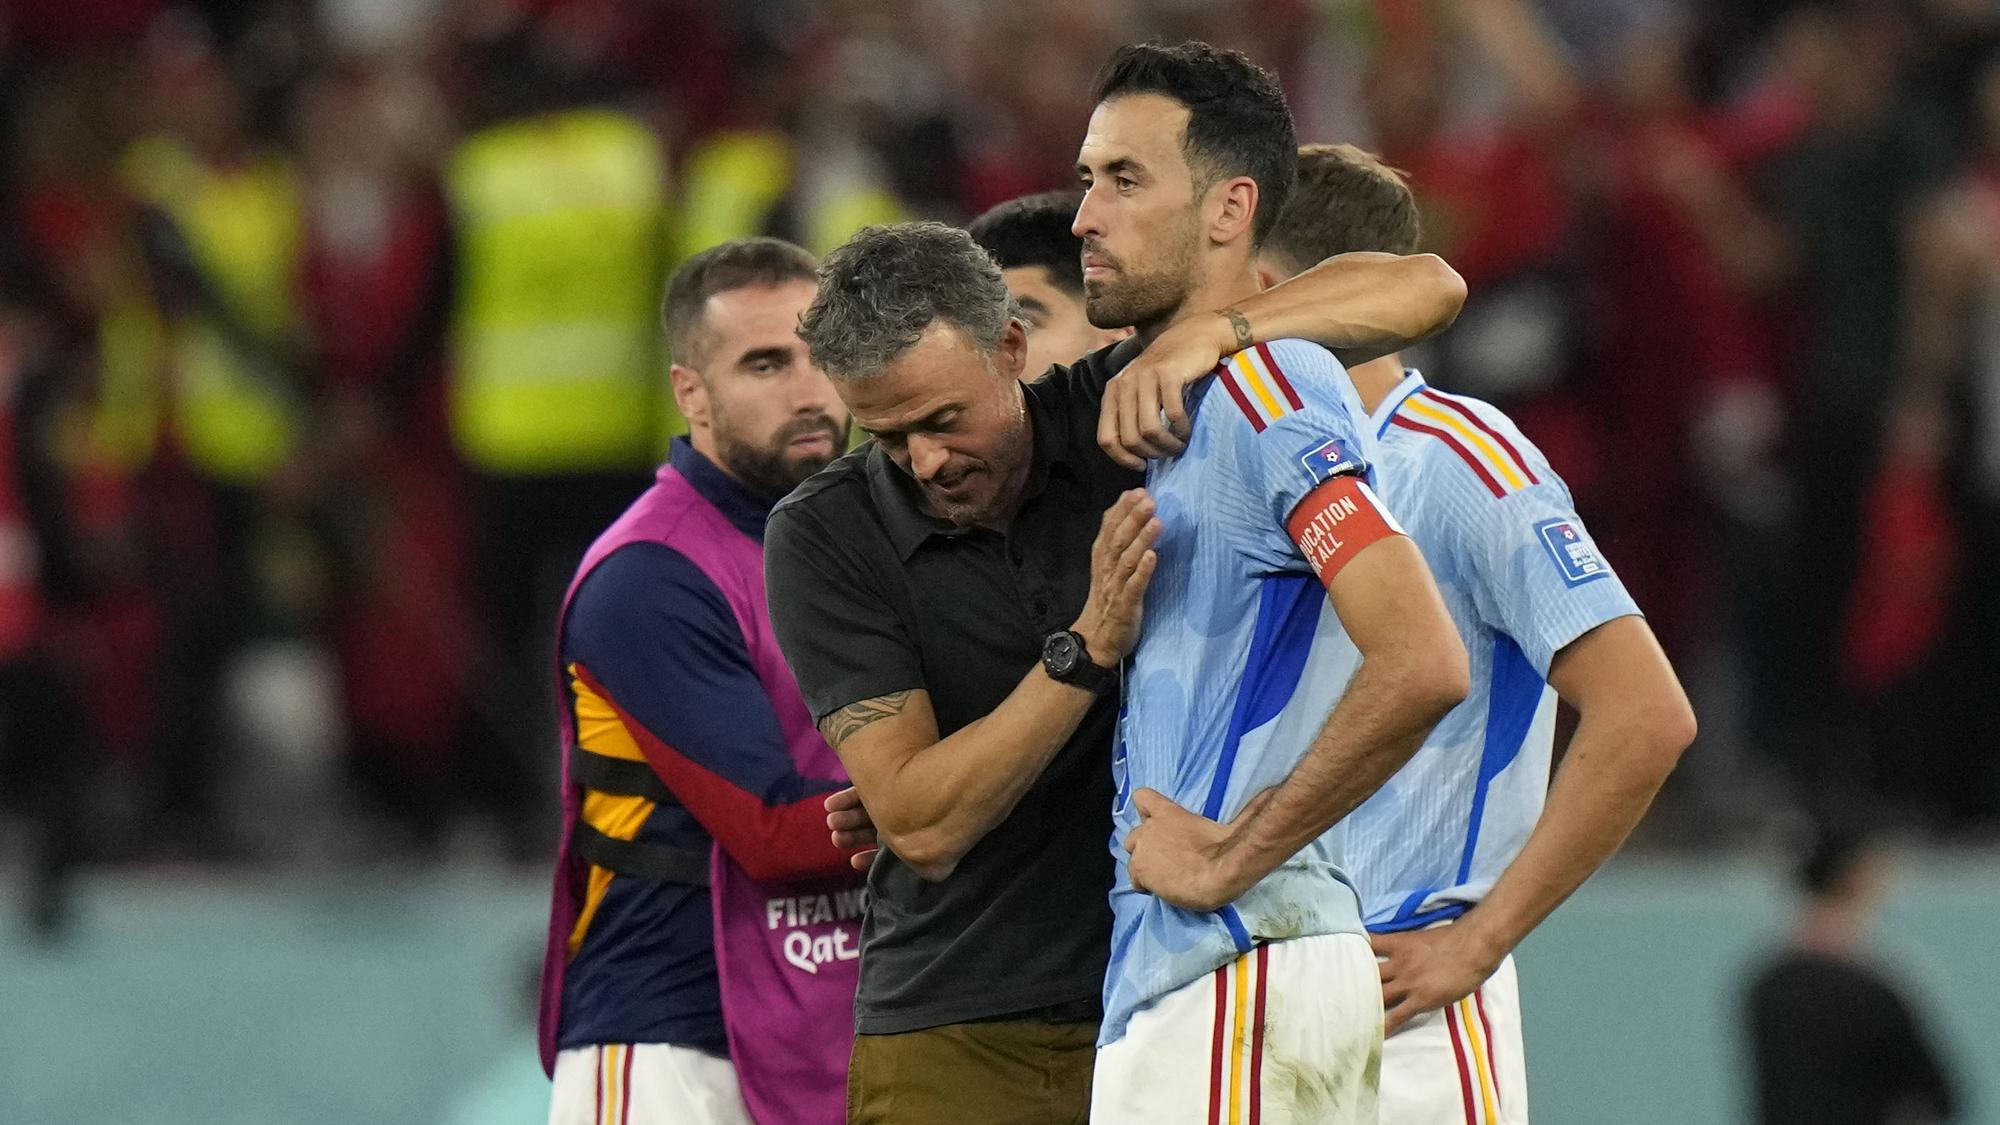 MS vo futbale 2022: Luis Enrique: Mrzí ma, že som nedokázal viac | Šport.sk